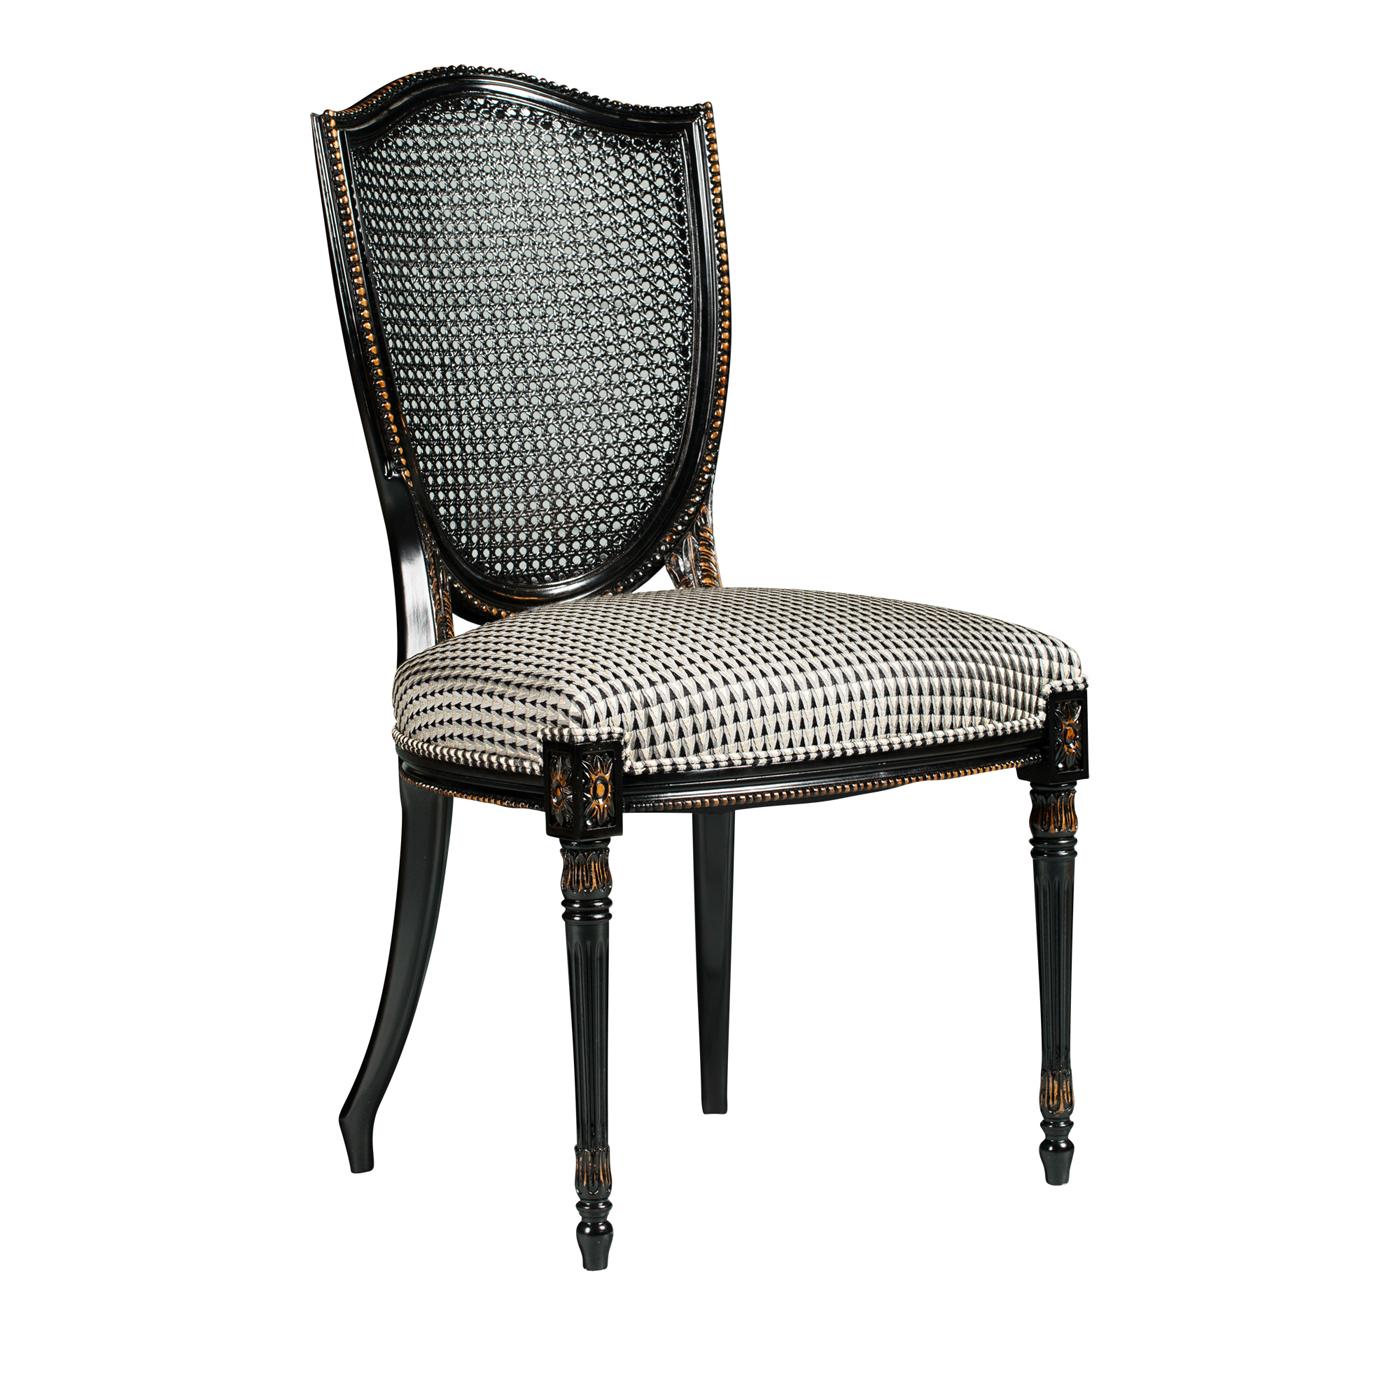 Italian Hepplewhite Chair